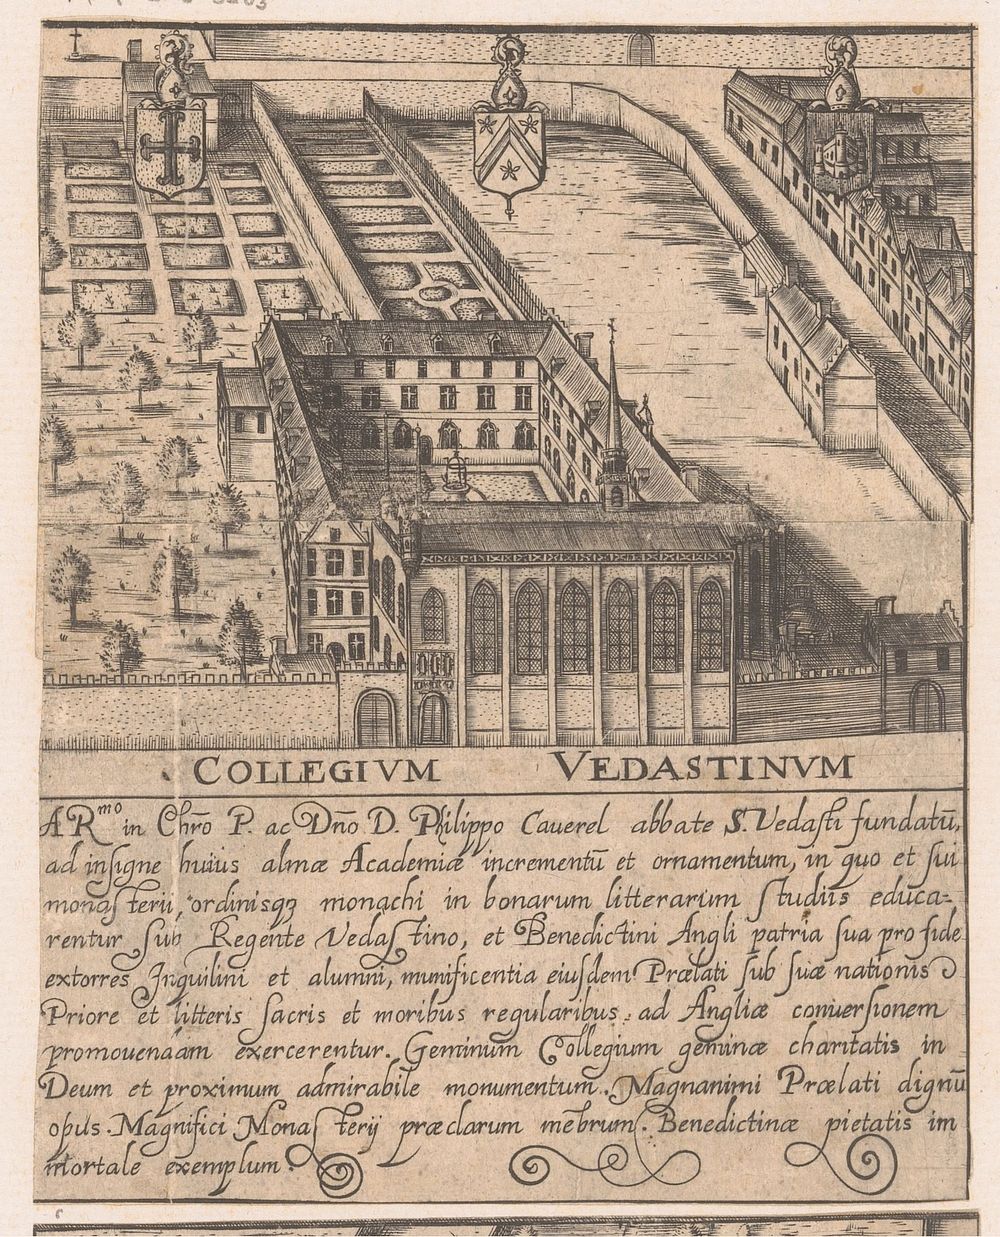 College van Vedastus (1605 - 1680) by Filippo Ferrari